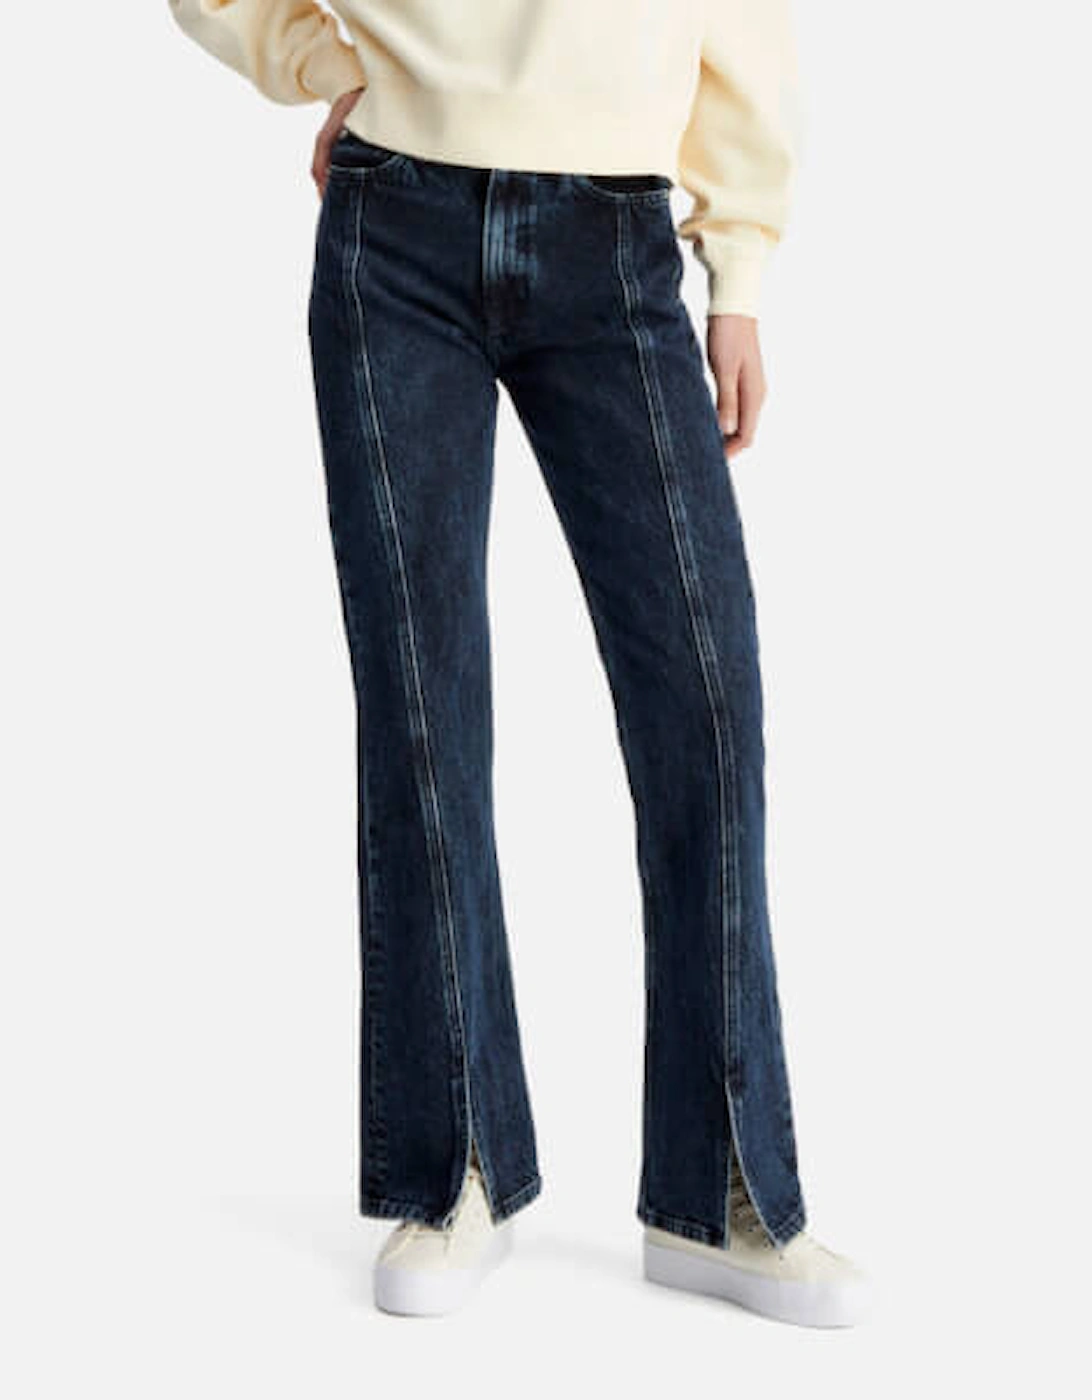 Jeans Authentic Split Front Bootcut Cotton Jeans, 2 of 1